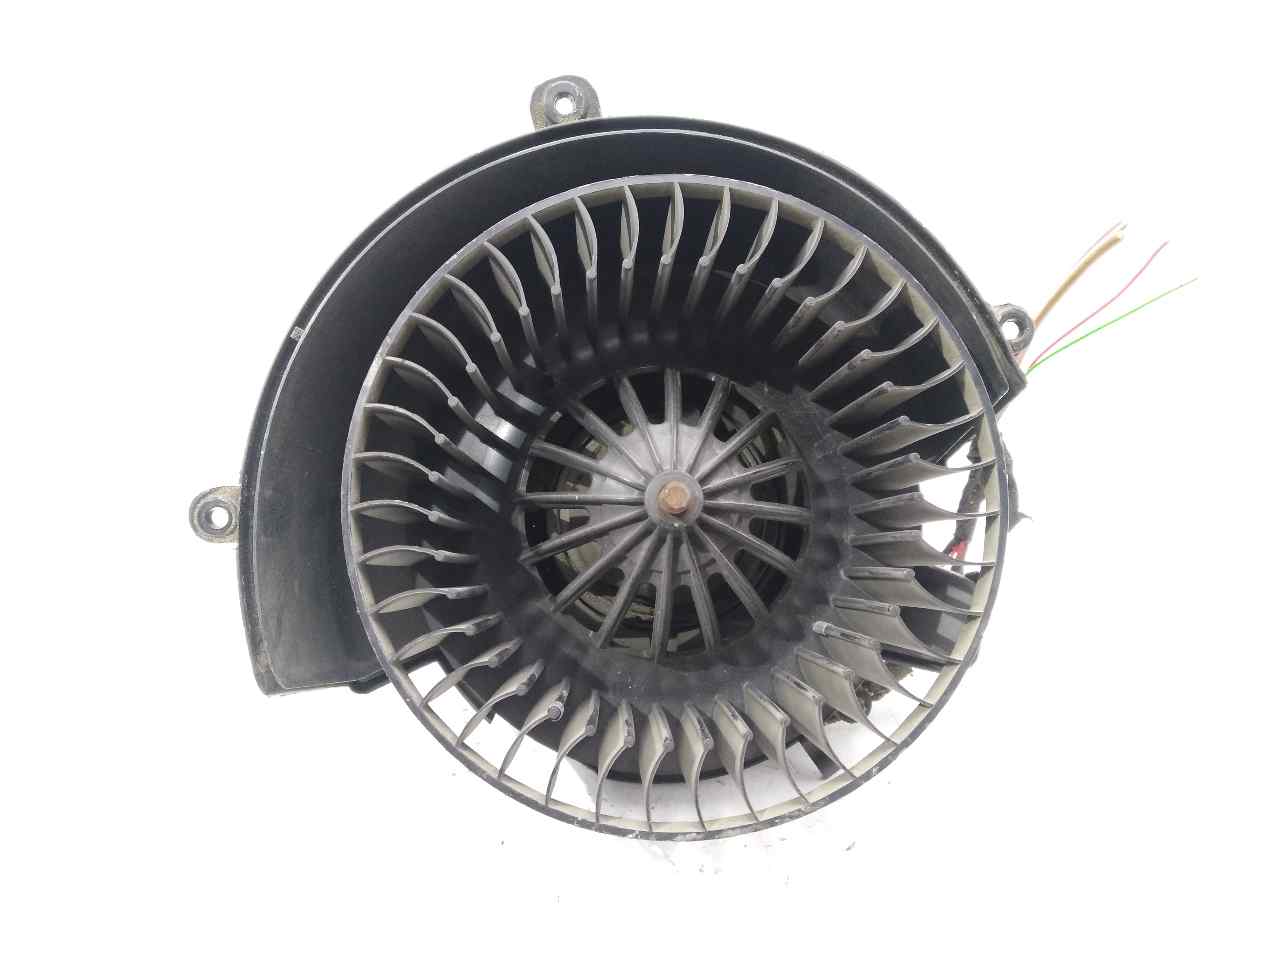 OPEL Astra H (2004-2014) Heater Blower Fan 9000348, 9000348, 9000348 23531237